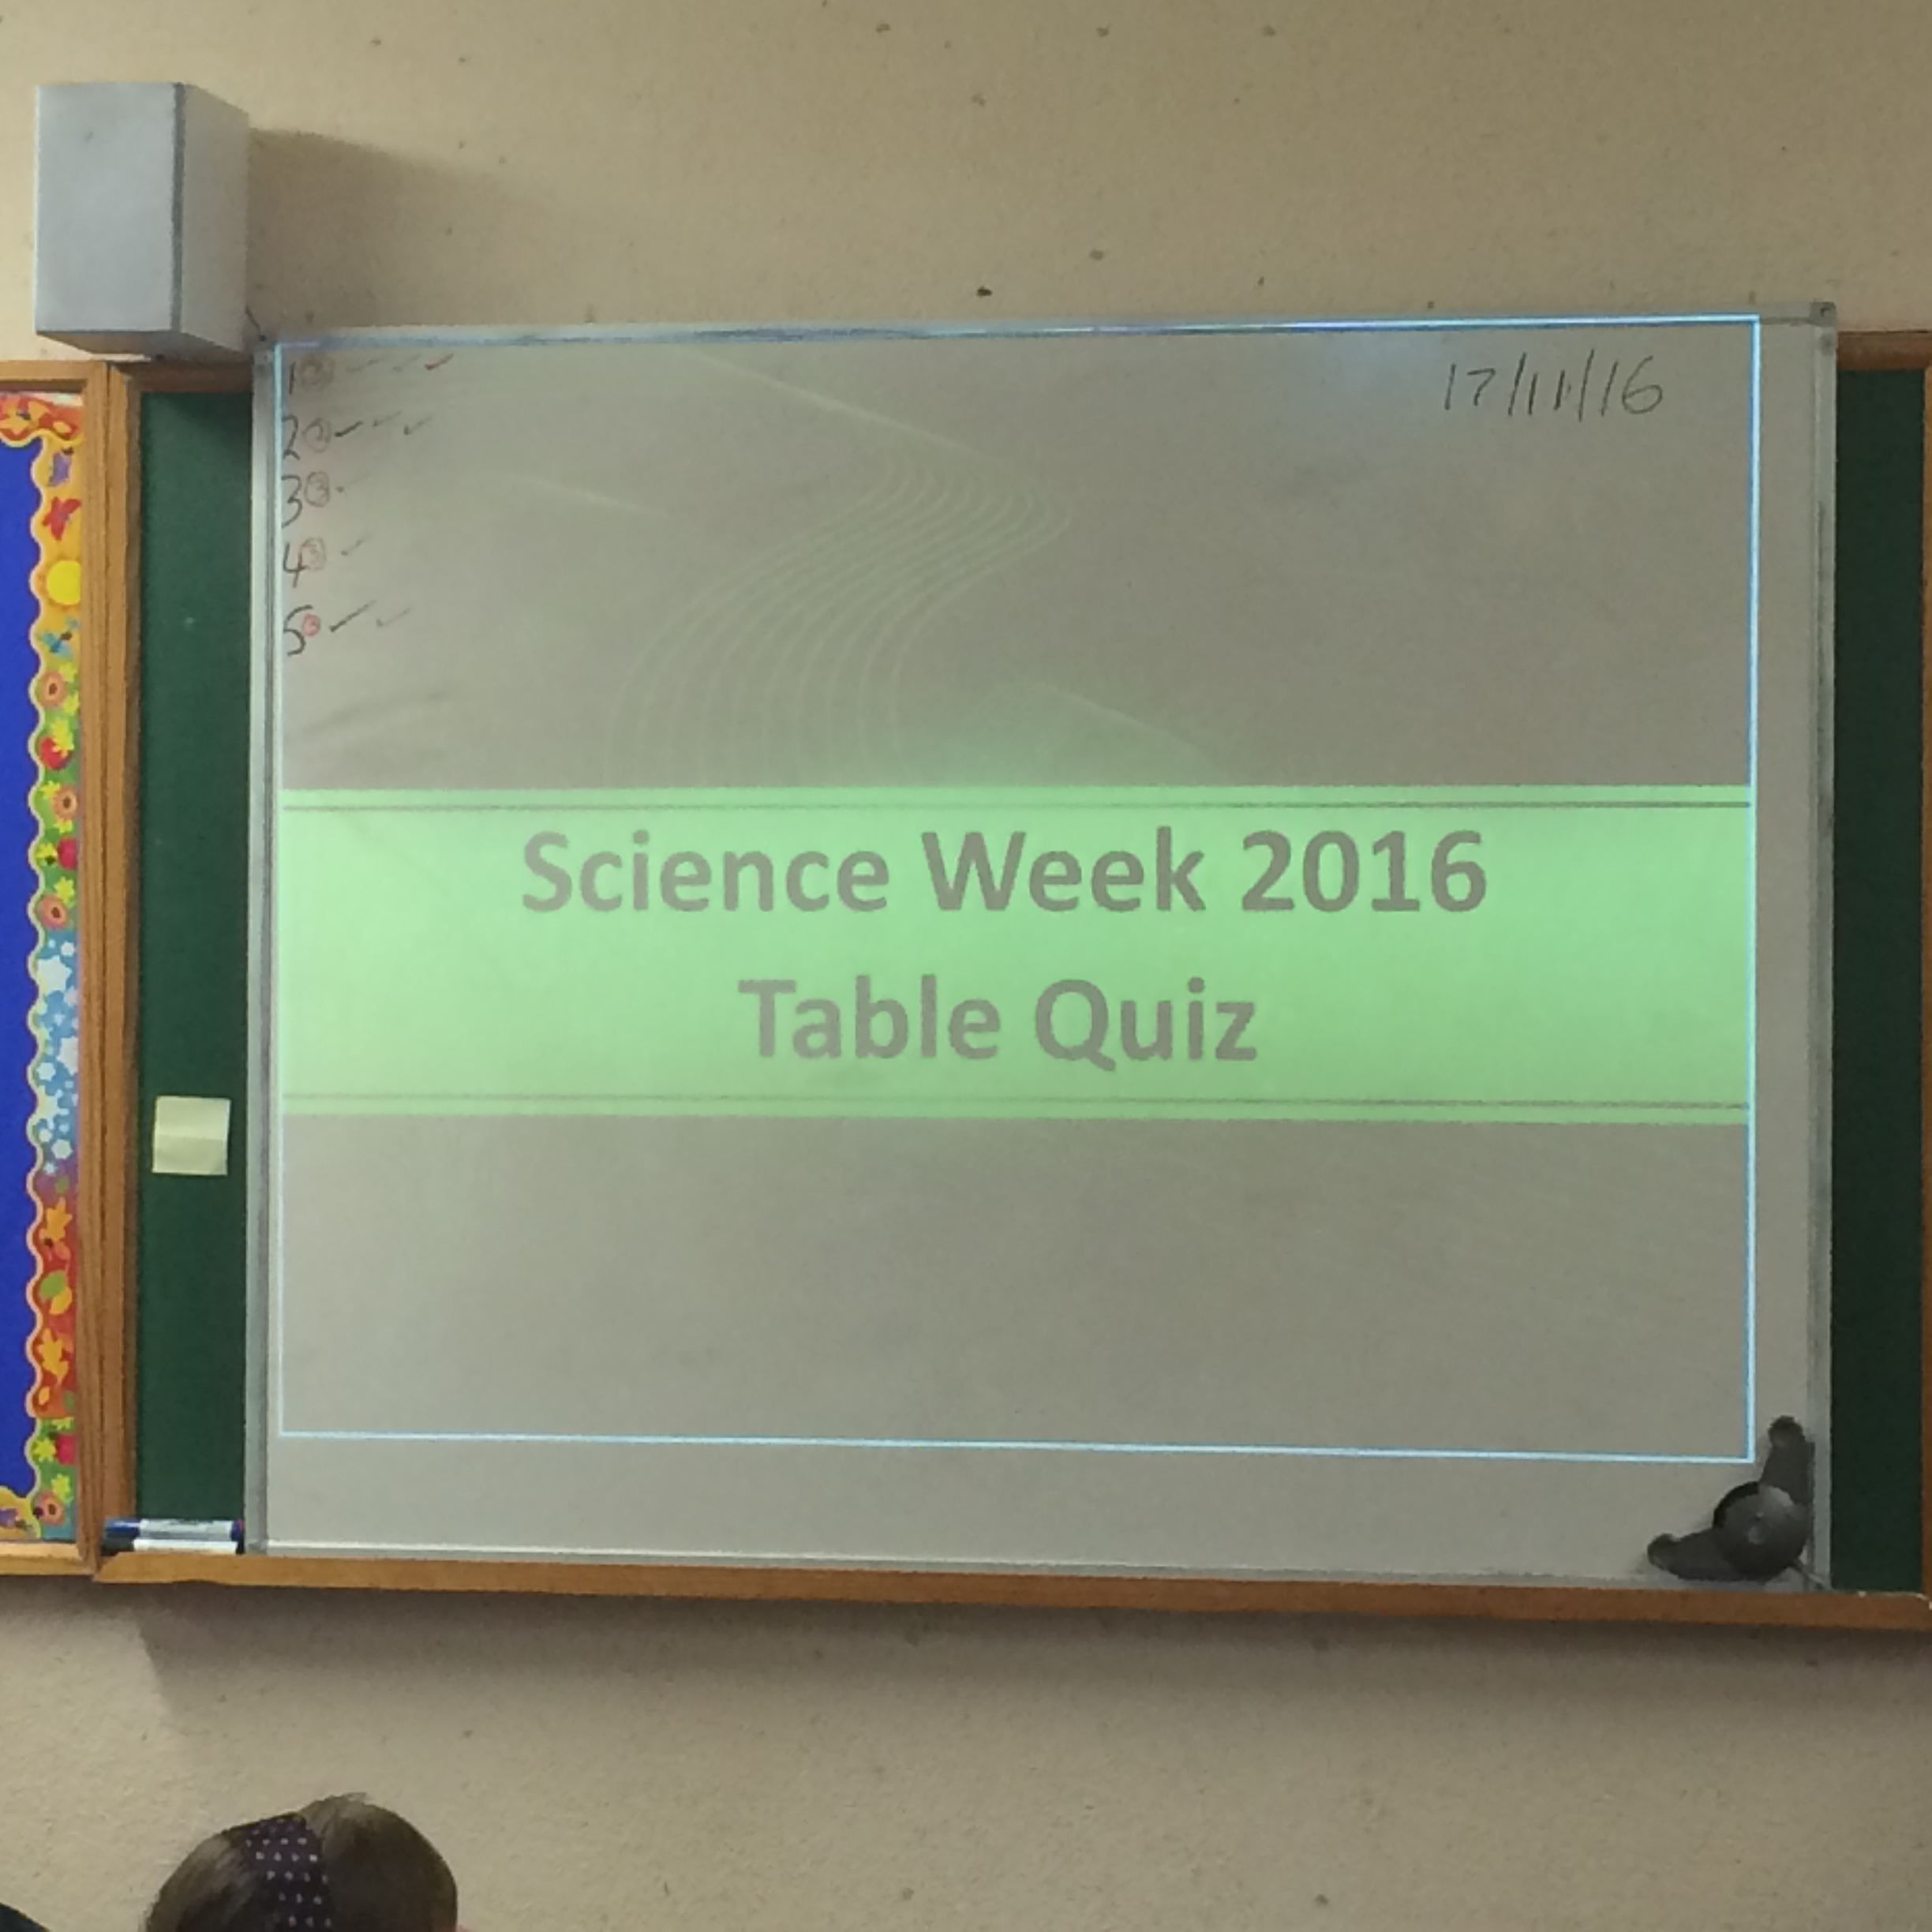 SCIENCE WEEK 2016